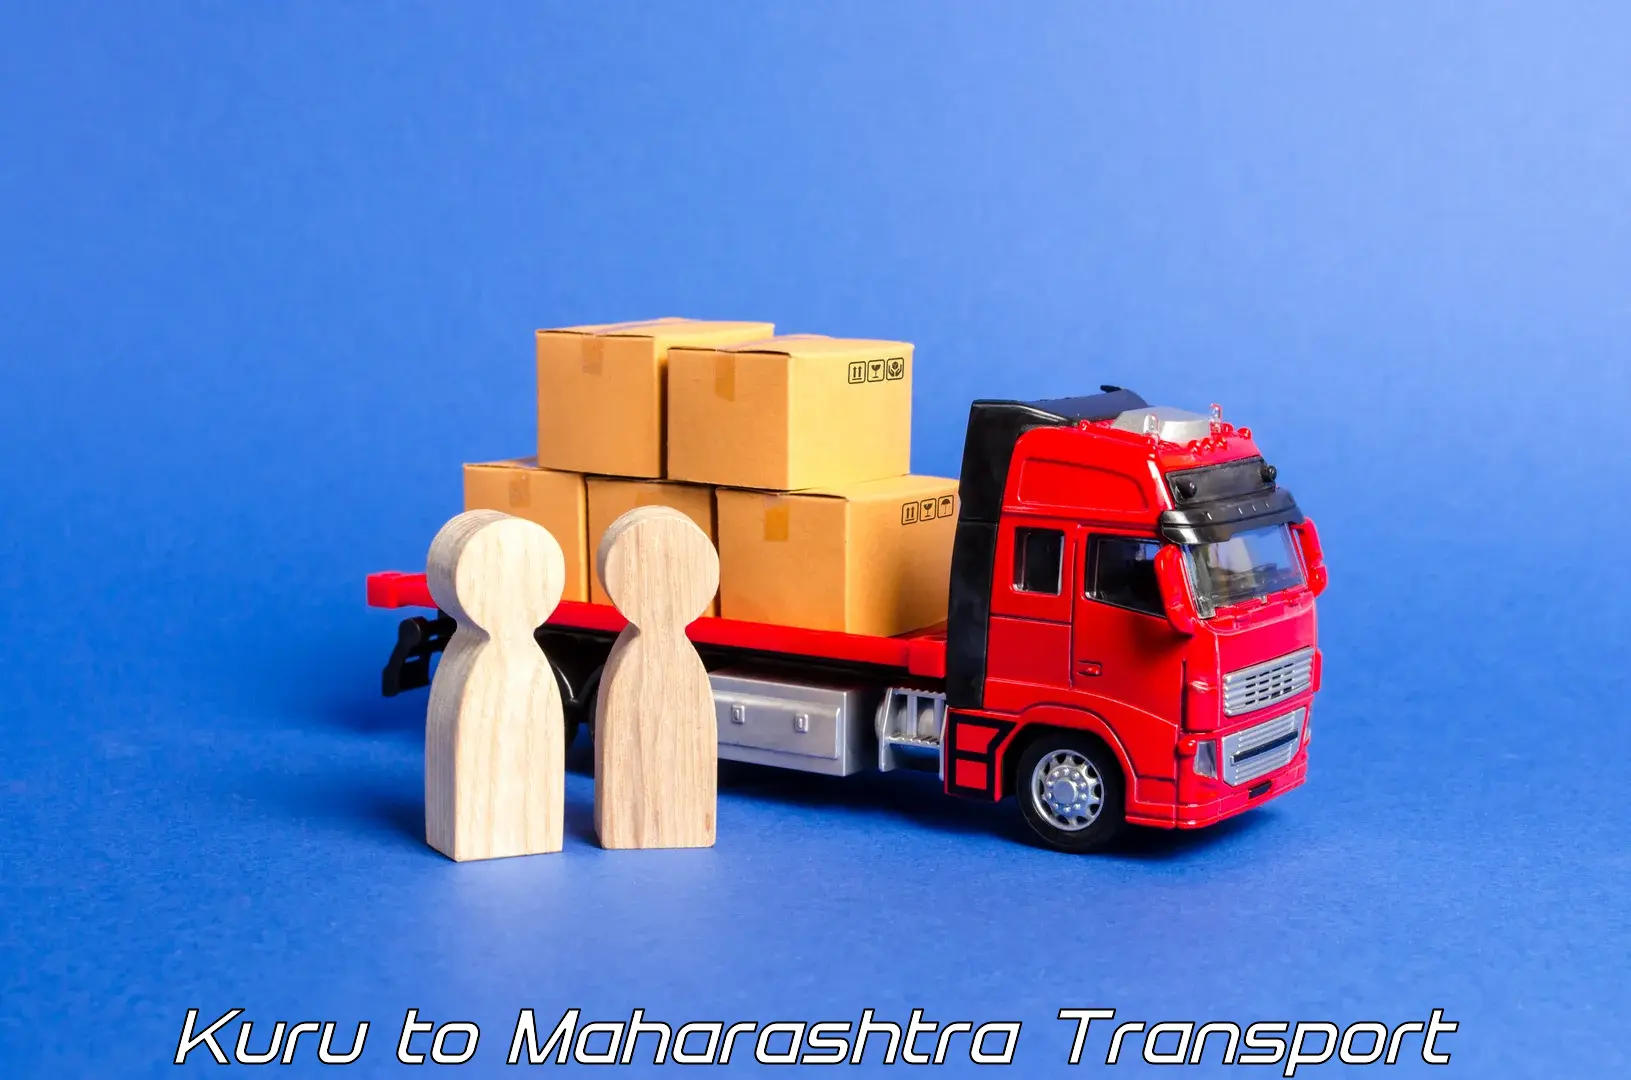 Truck transport companies in India Kuru to Yavatmal